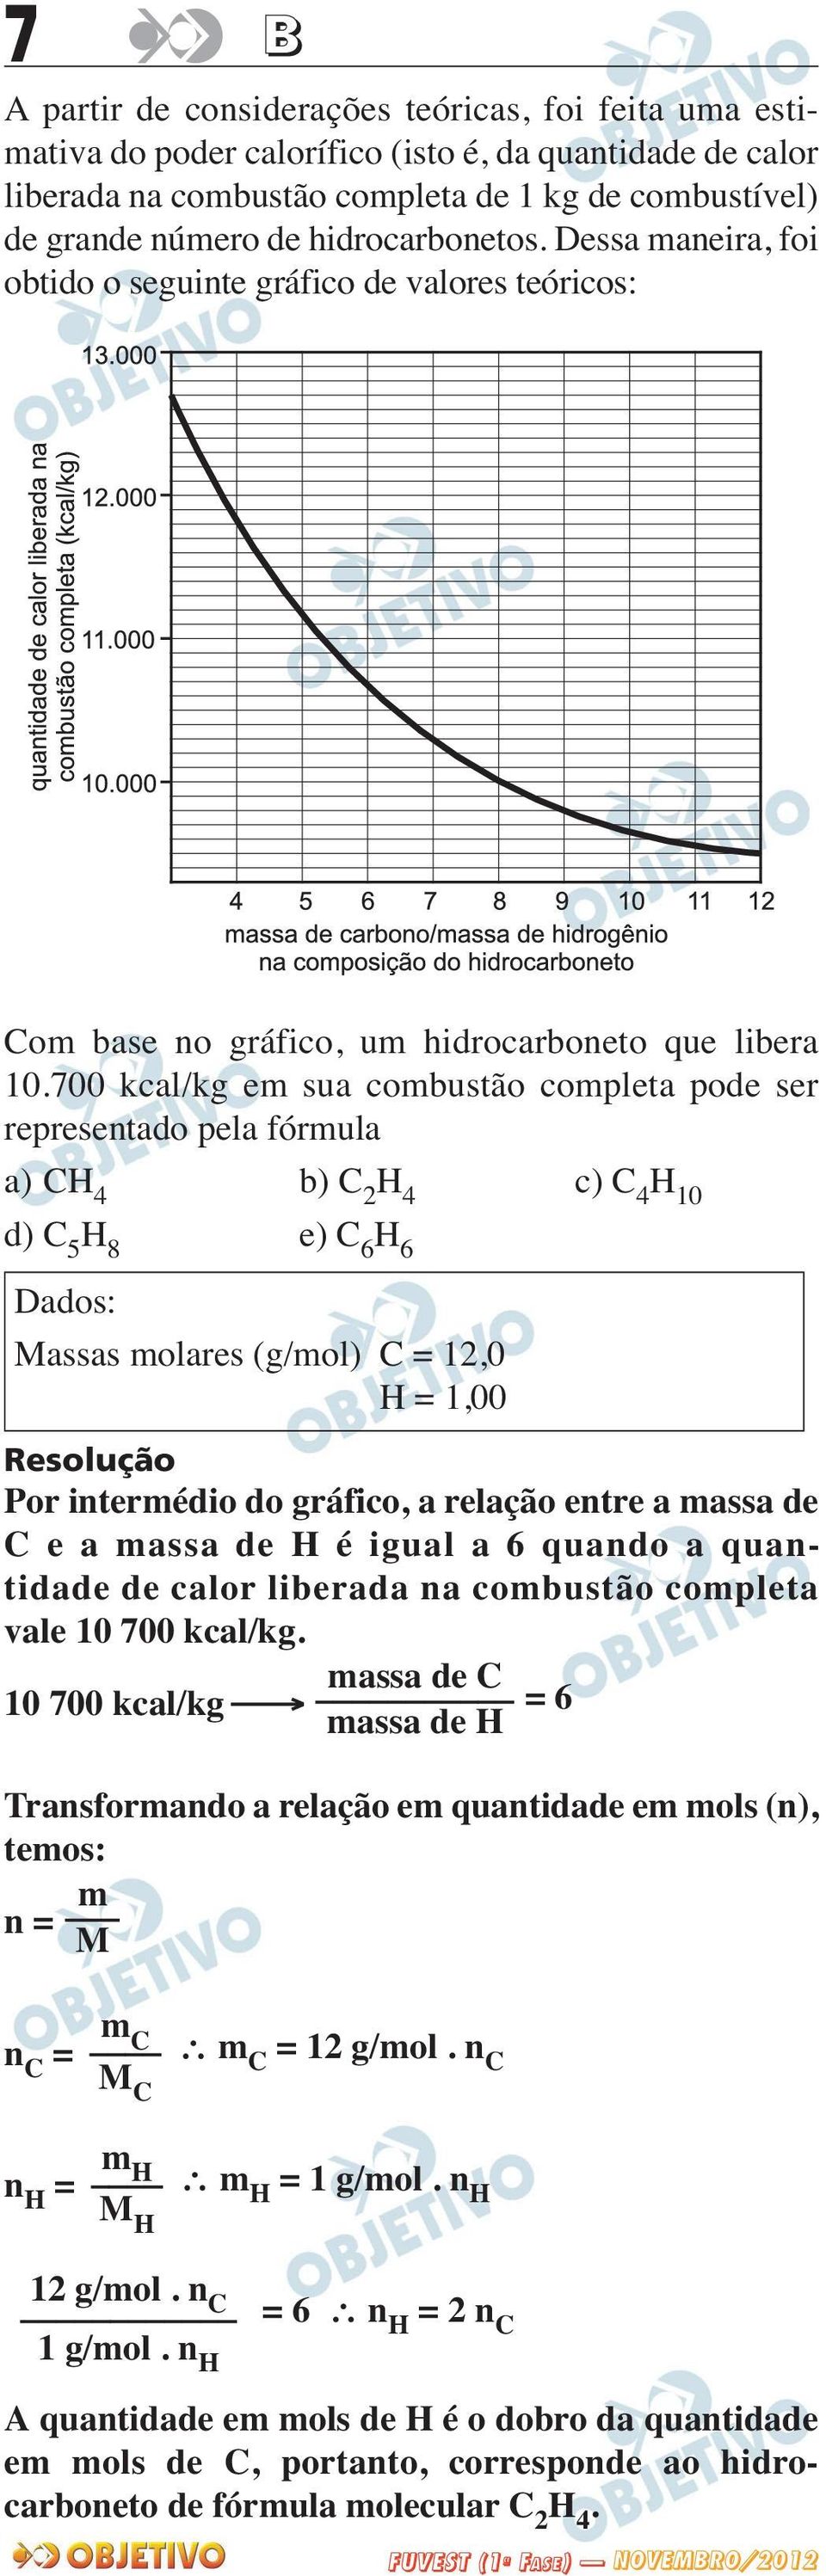 700 kcal/kg em sua combustão completa pode ser representado pela fórmula a) CH 4 b) C 2 H 4 c) C 4 H 10 d) C 5 H 8 e) C 6 H 6 Dados: Massas molares (g/mol) C = 12,0 H = 1,00 Por intermédio do